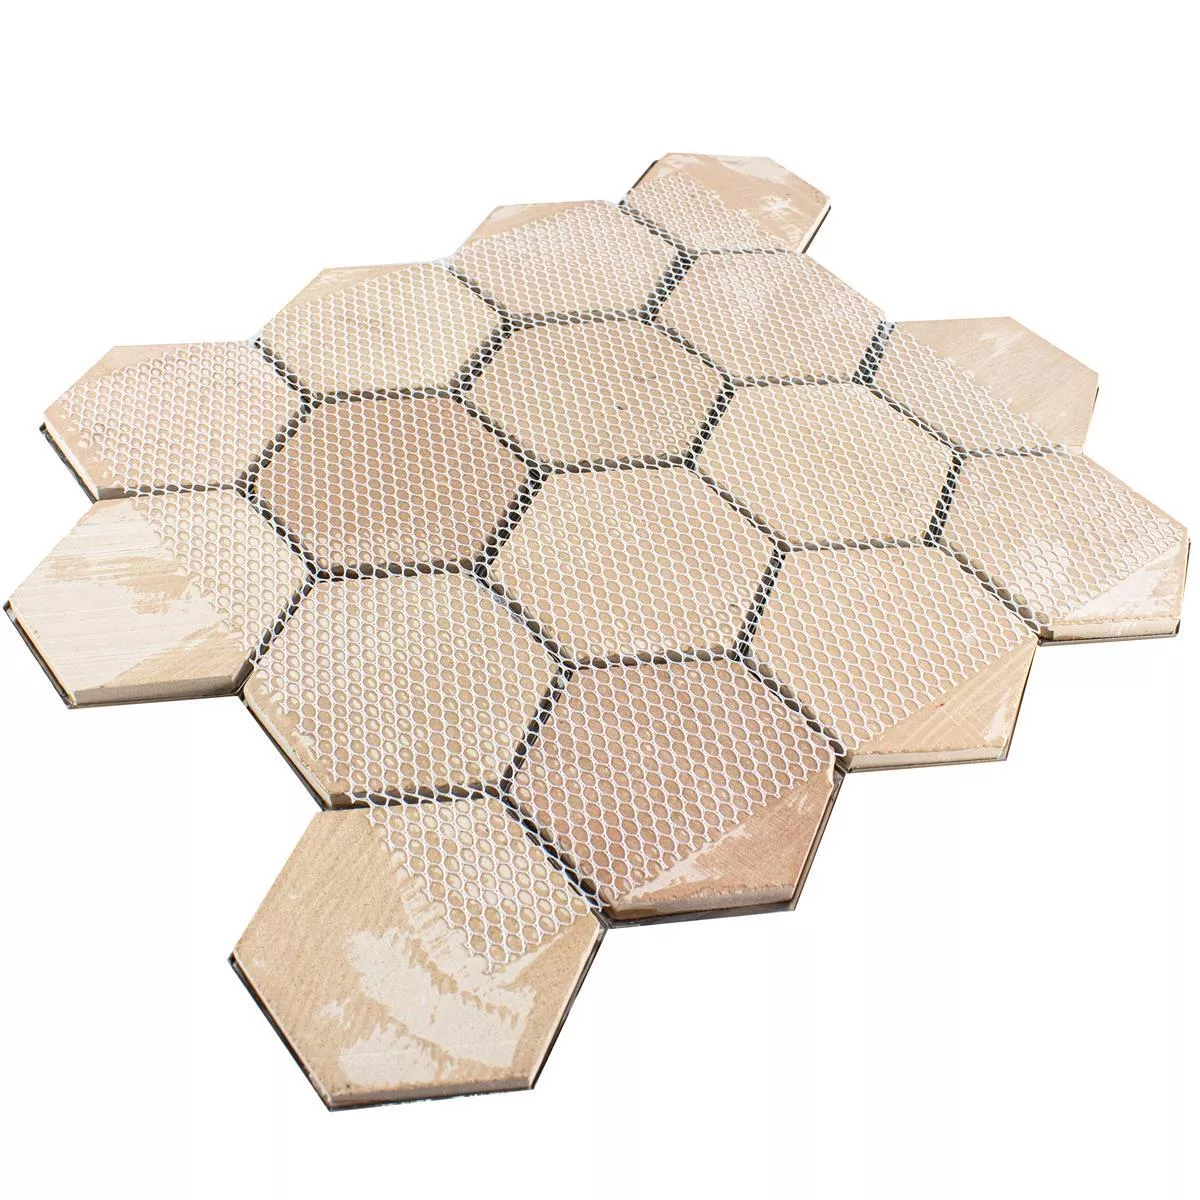 Muster von Edelstahl Mosaikfliesen Durango Hexagon 3D Braun